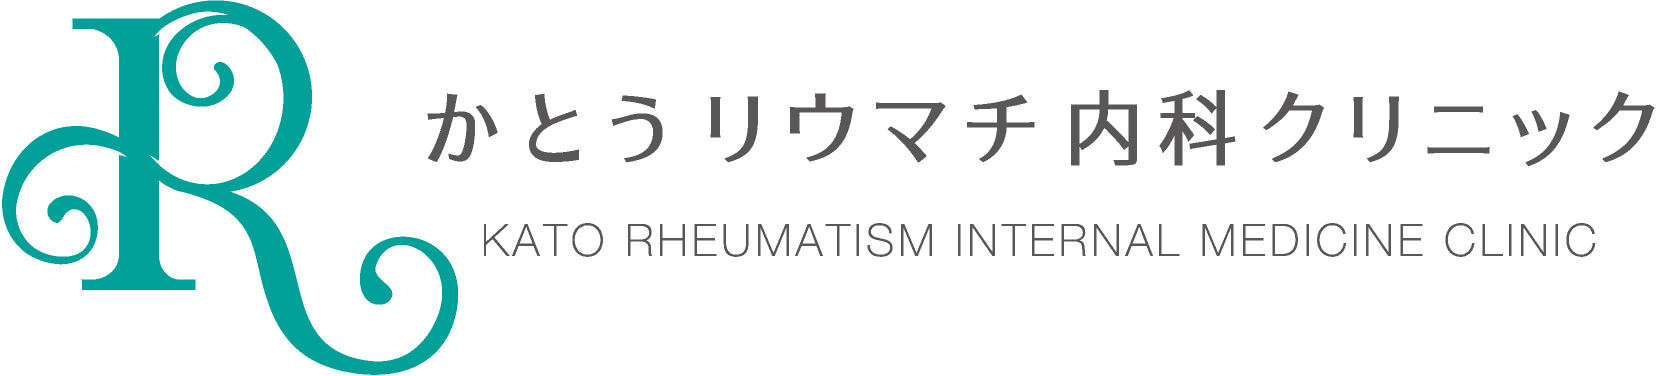 かとうリウマチ内科クリニック KATO RHEUMATISM INTERNAL MEDICINE CLINIC